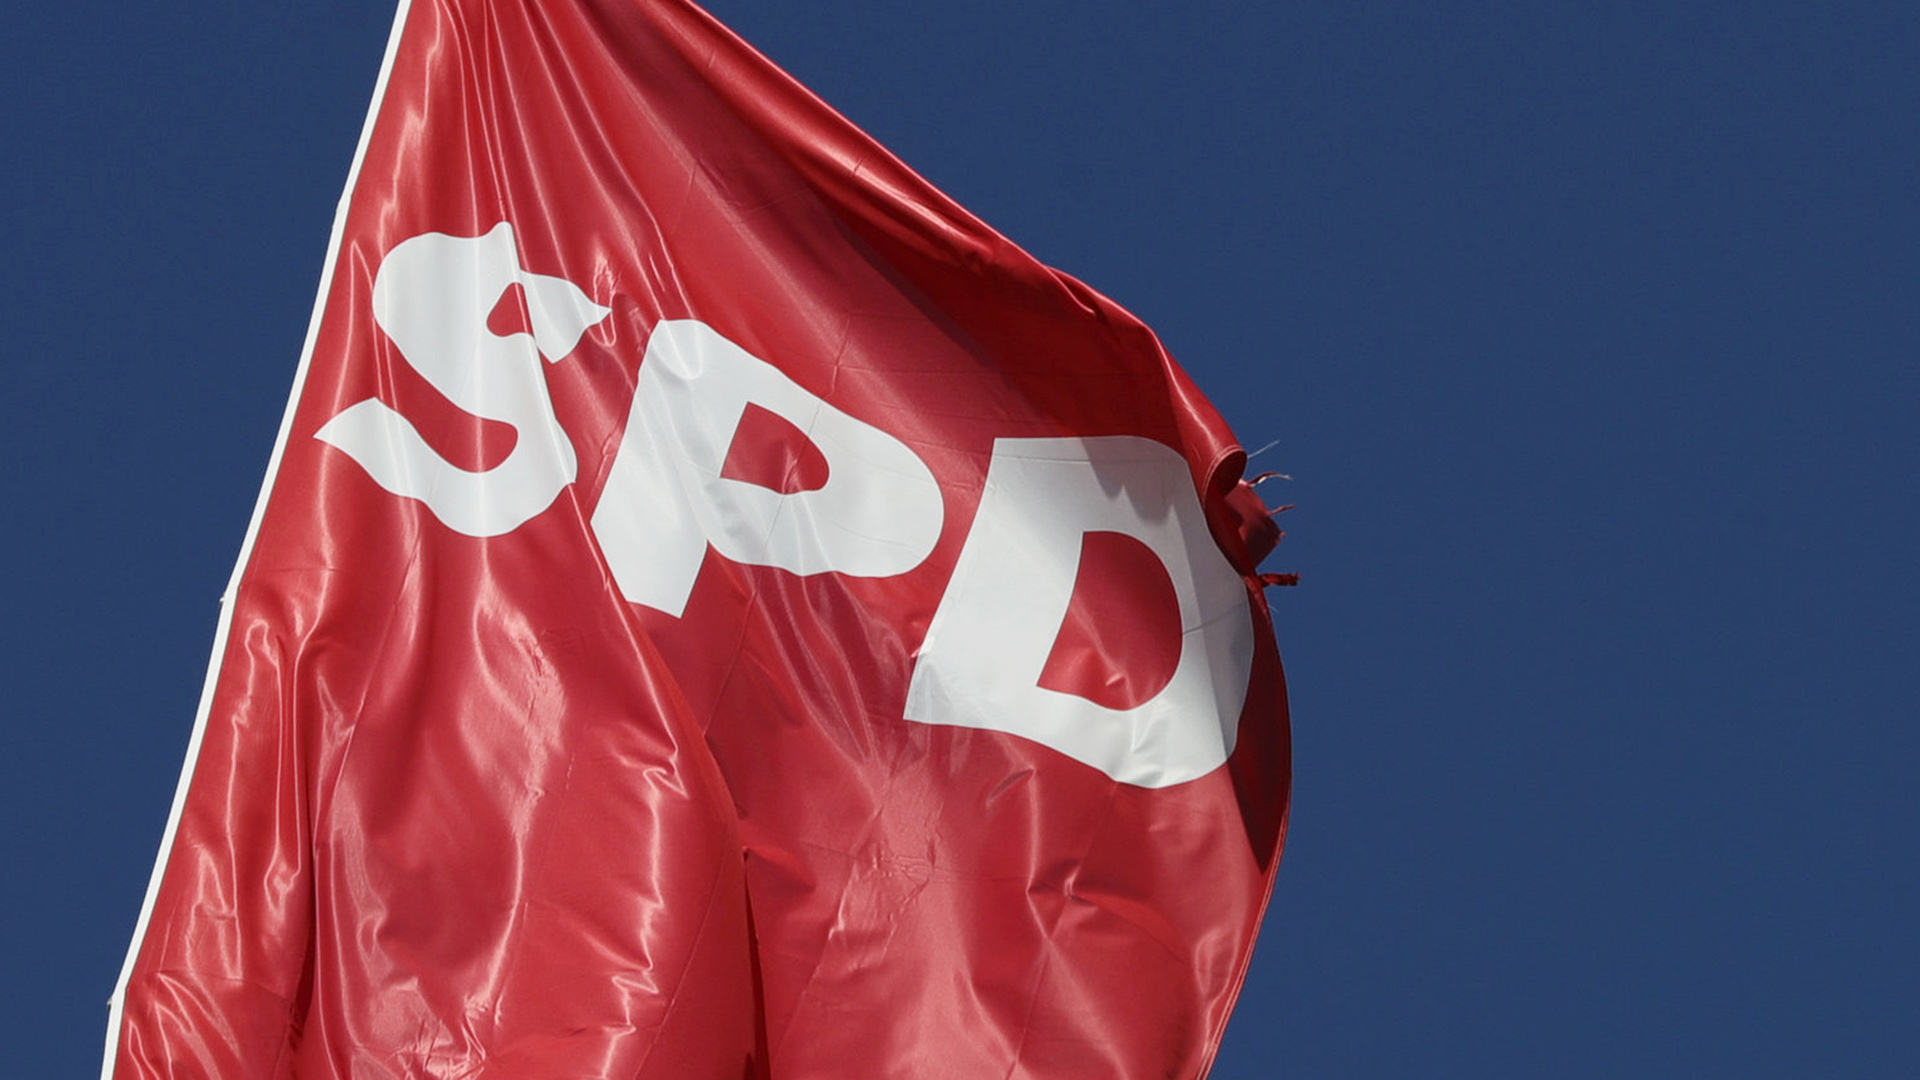 SPD Fahne | dpa